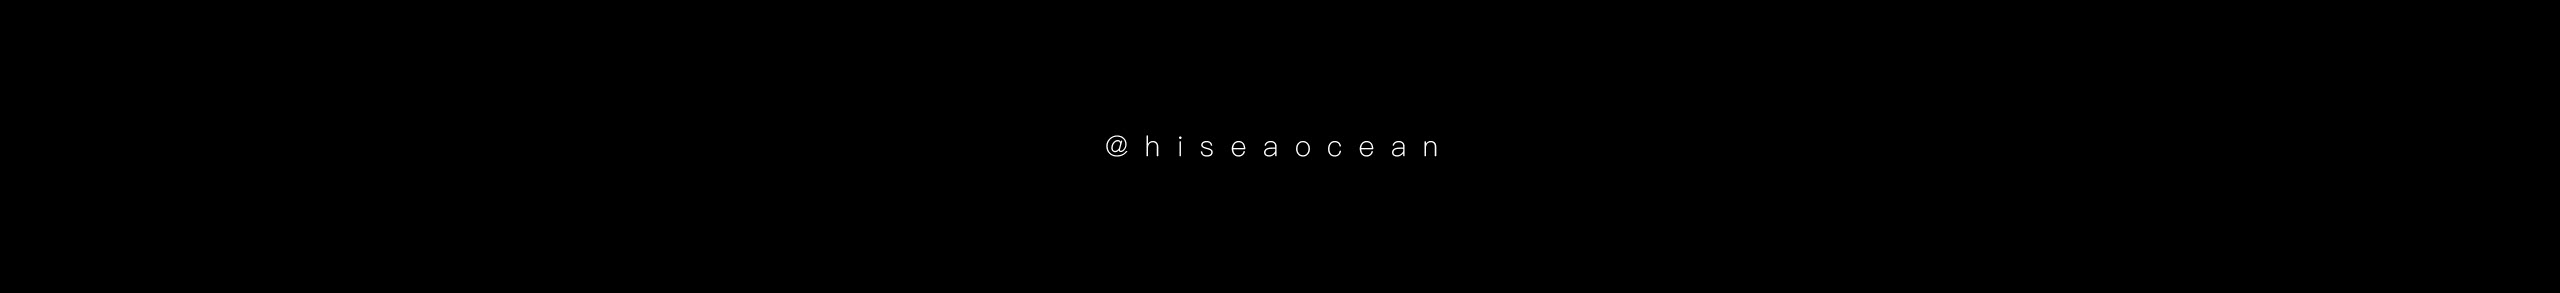 hi seaocean's profile banner